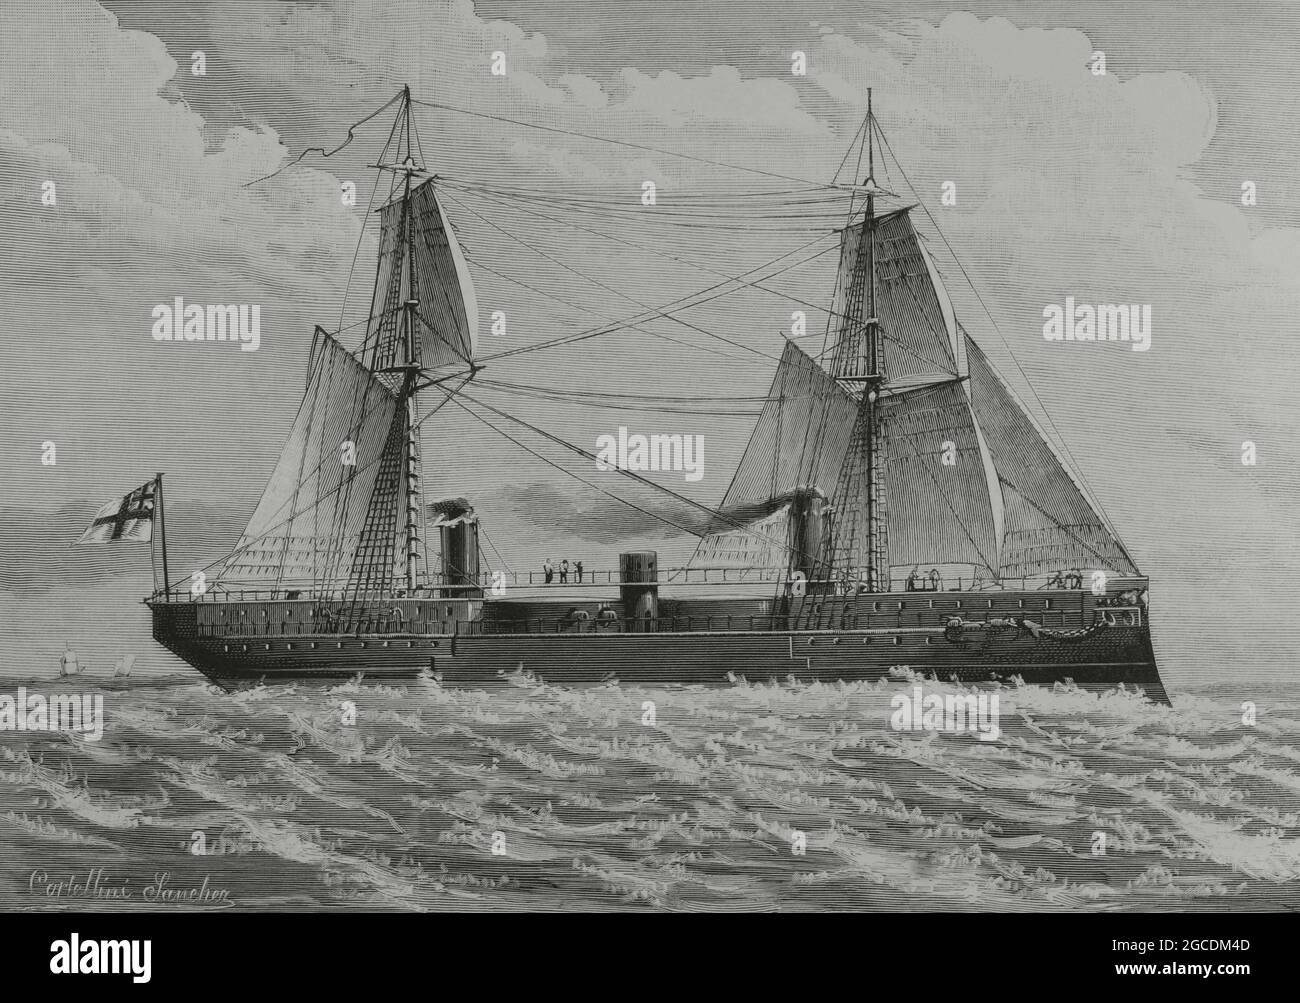 Die HMS Ajax. Kriegsschiff mit Eisenplattierungen, gebaut für die Royal Navy. Zeichnung von Cortellini Sánchez. Gravur. La Ilustración Española y Americana, 1882. Stockfoto